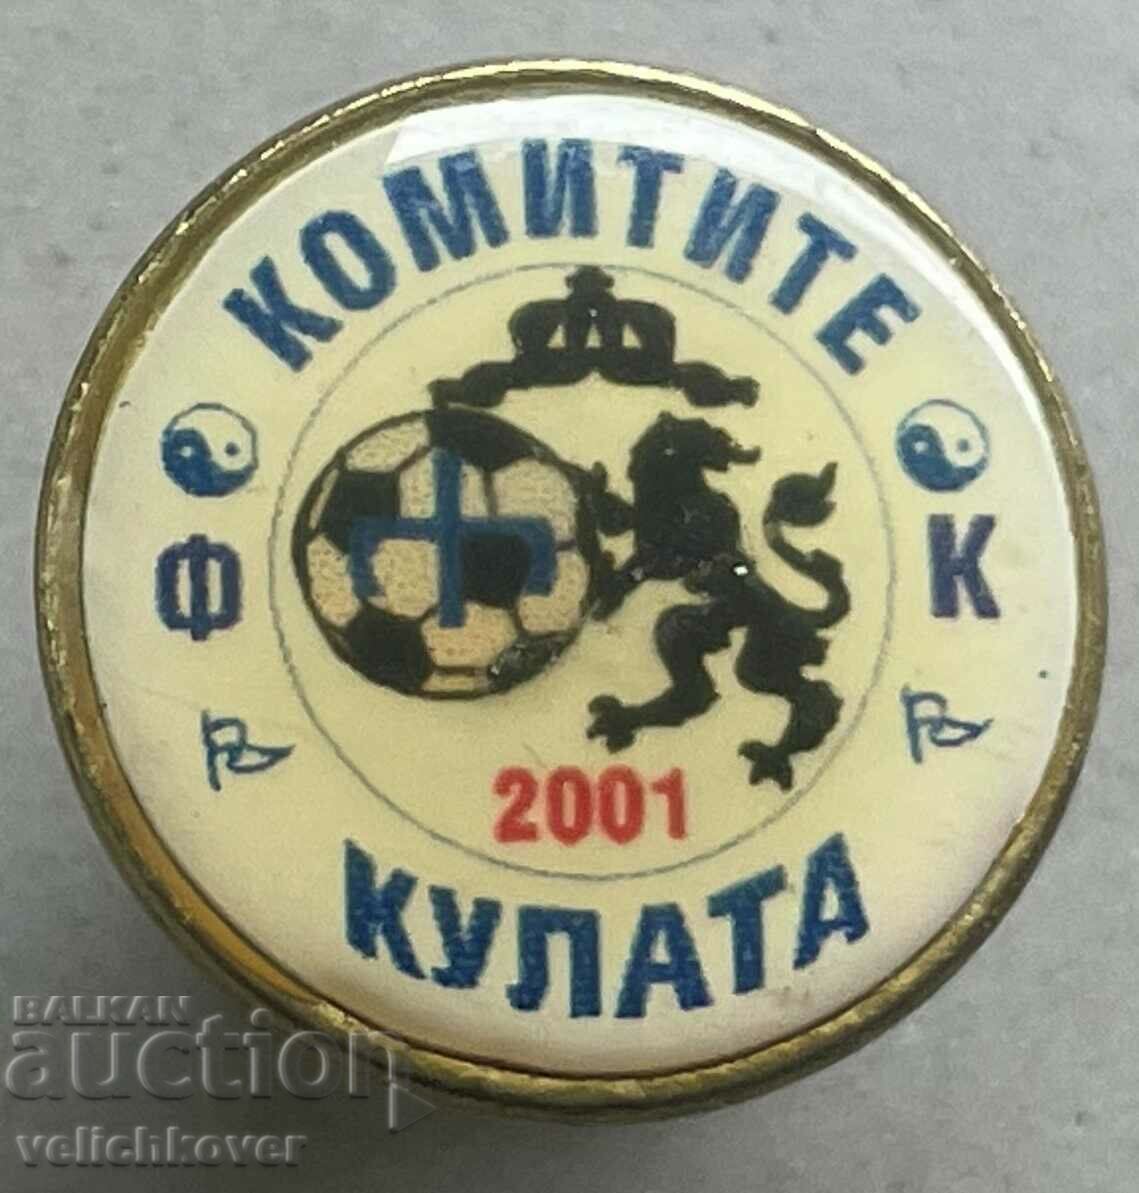 34858 Bulgaria semnează clubul de fotbal Comitete Kulata